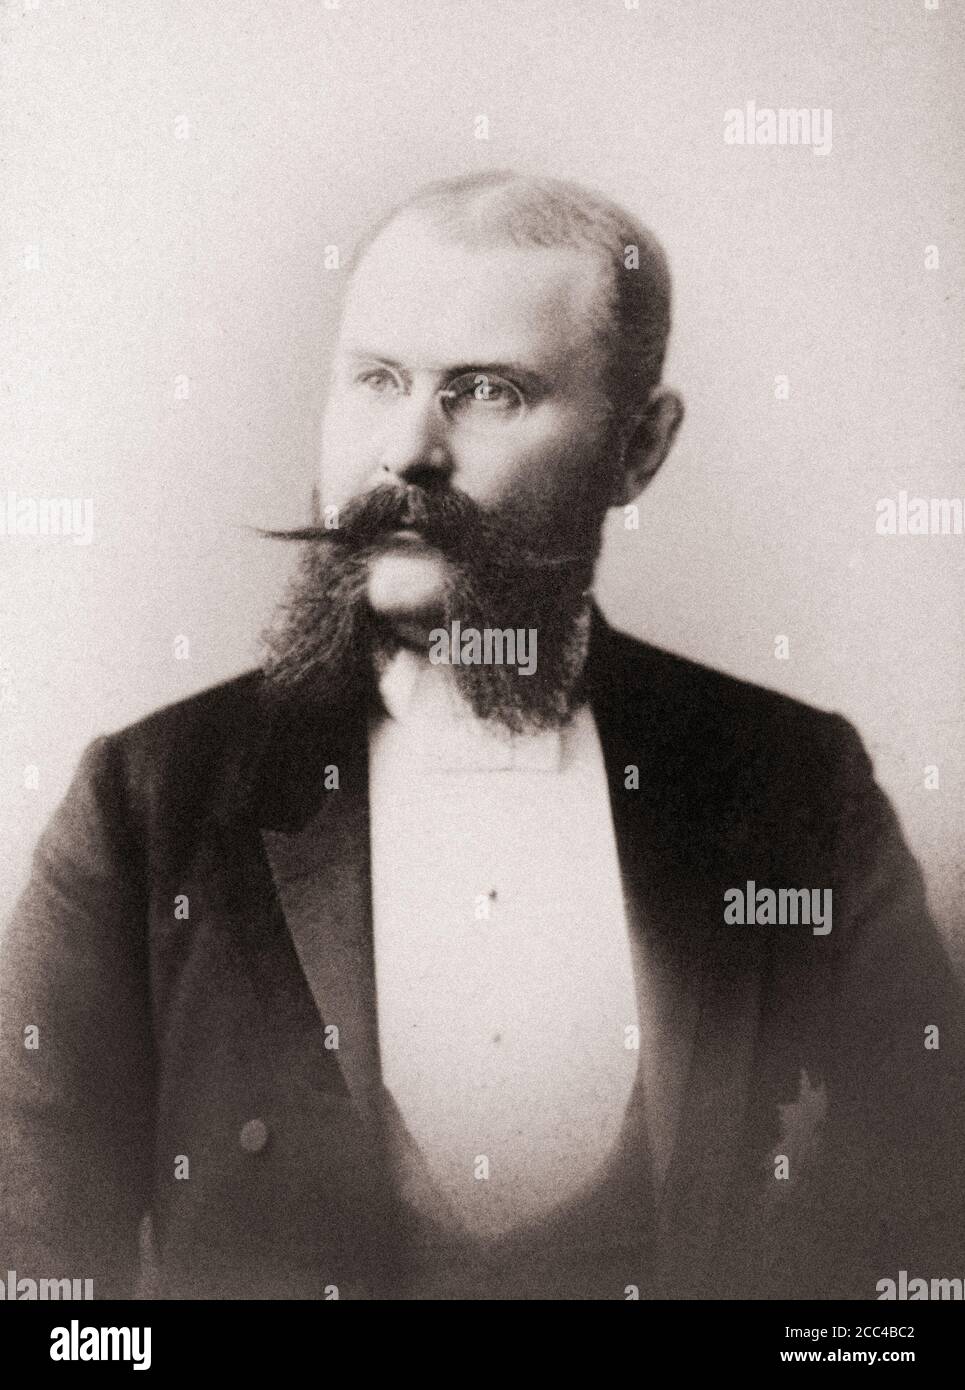 William II de Württemberg (1848 – 1921) était le dernier roi de Württemberg. Il a statué du 6 octobre 1891 jusqu'à l'abolition du royaume le 30 novembre Banque D'Images